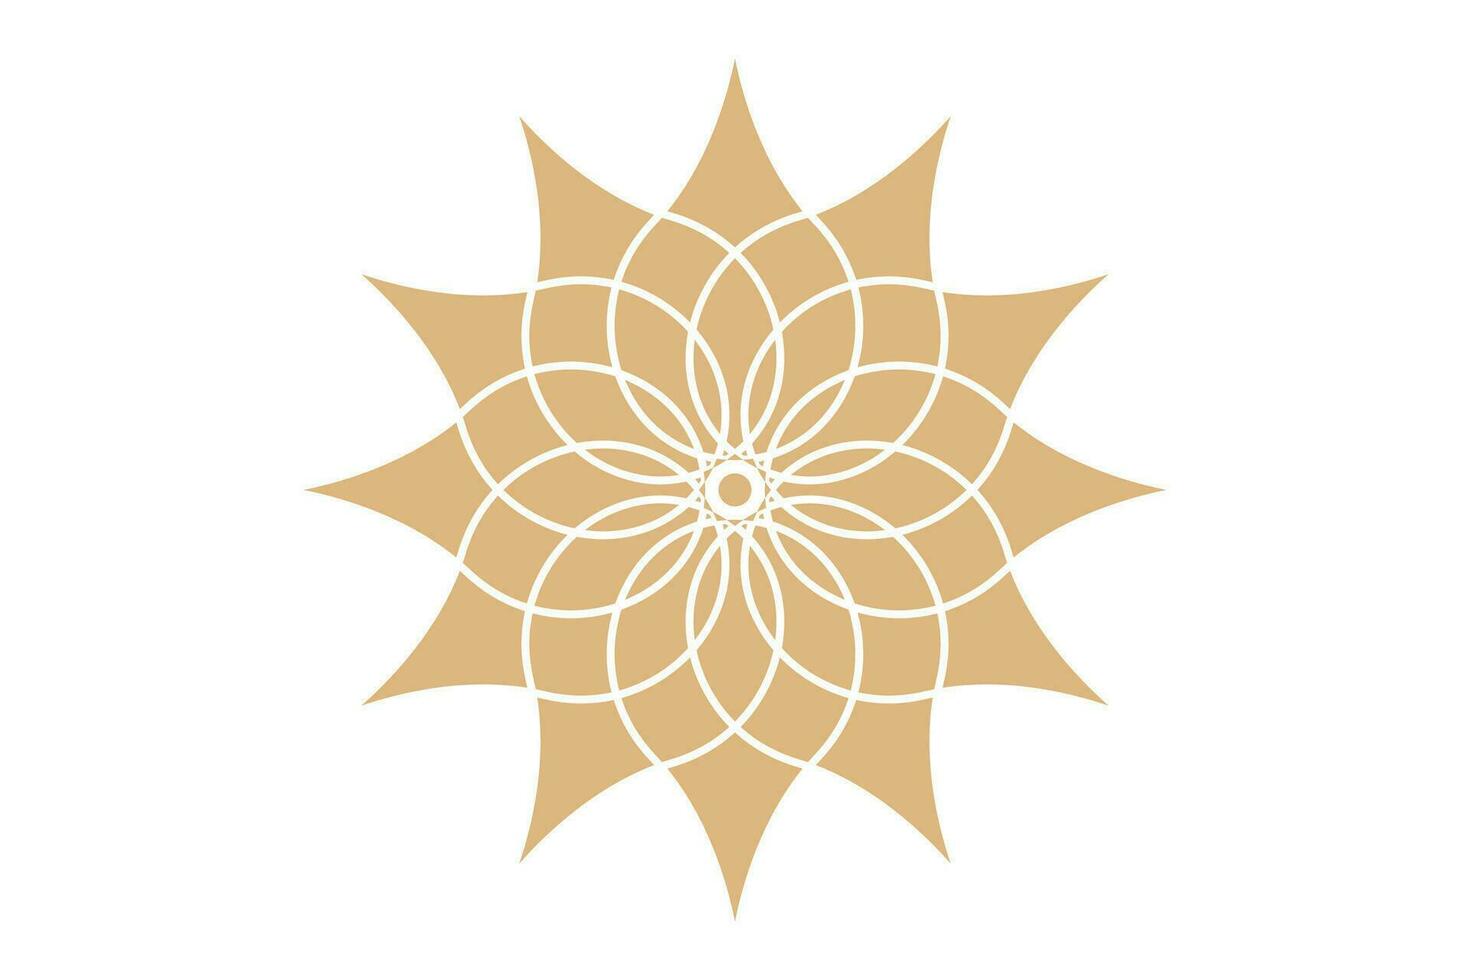 blomma av liv mandala av helig gammal geometri. vektor symboler och element. alkemi, religion, filosofi, astrologi och andlighet teman. skärande logotyp ikon isolerat på vit bakgrund